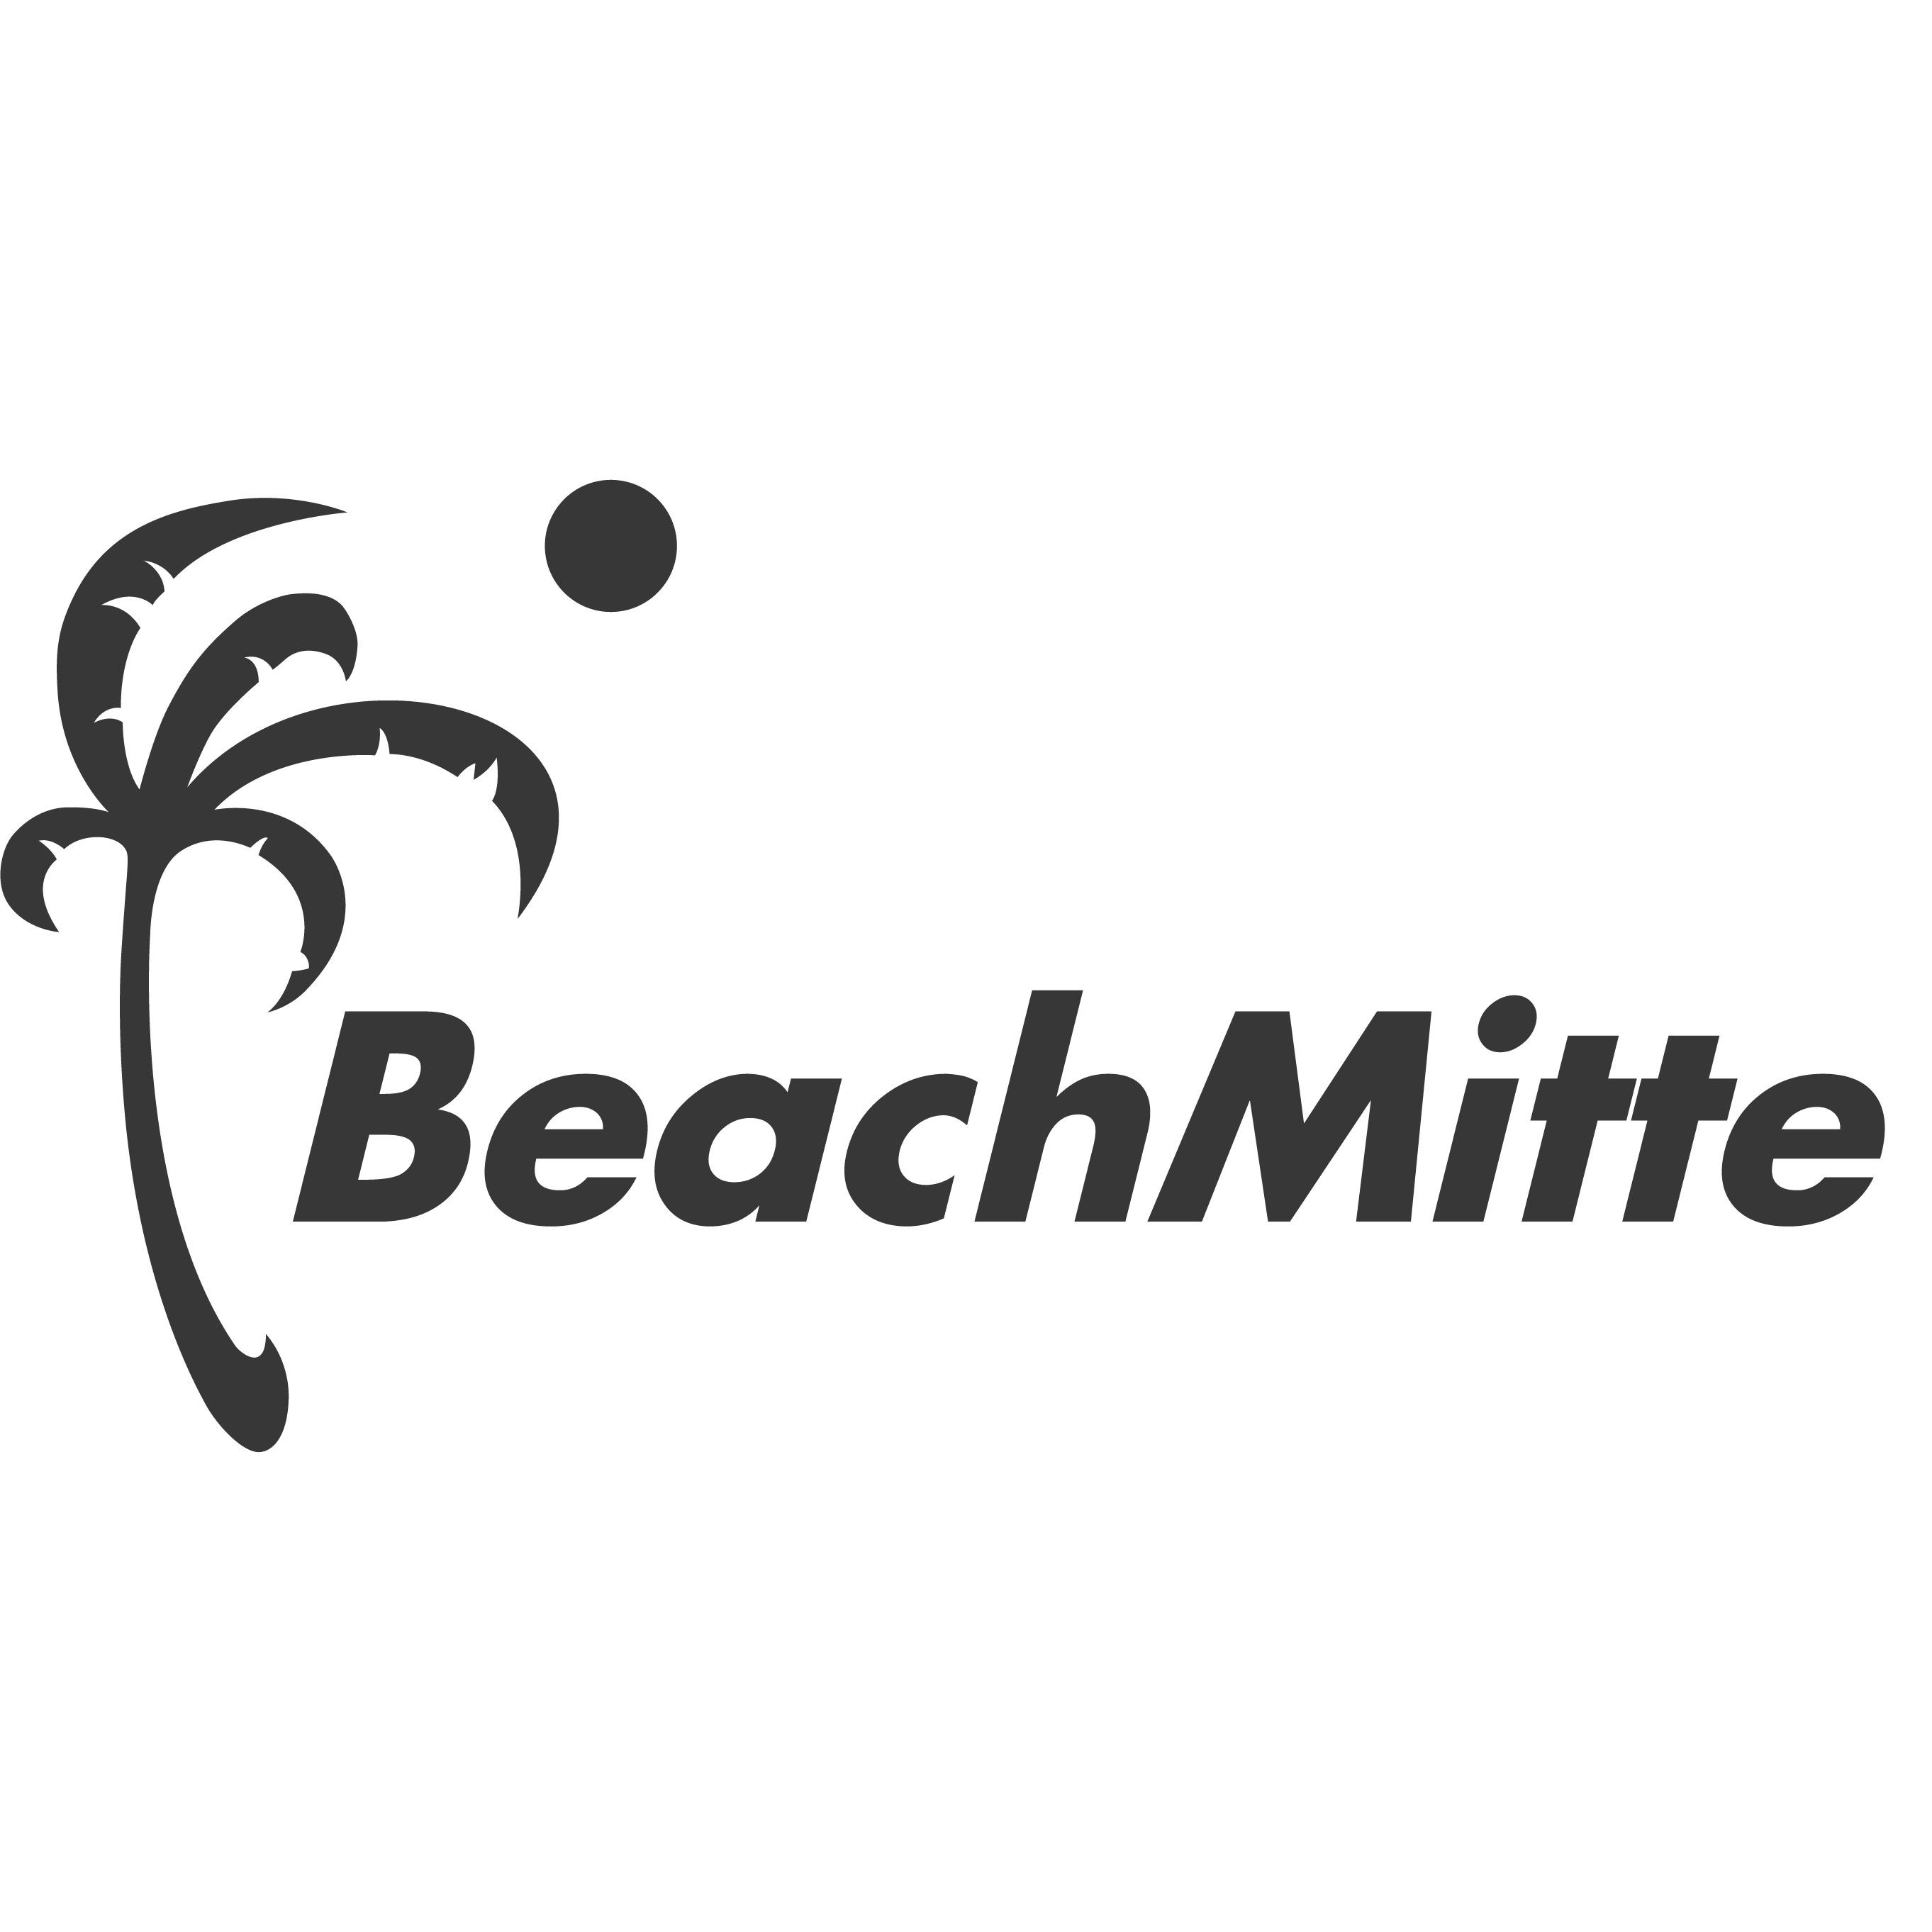 BeachMitte in Berlin - Logo